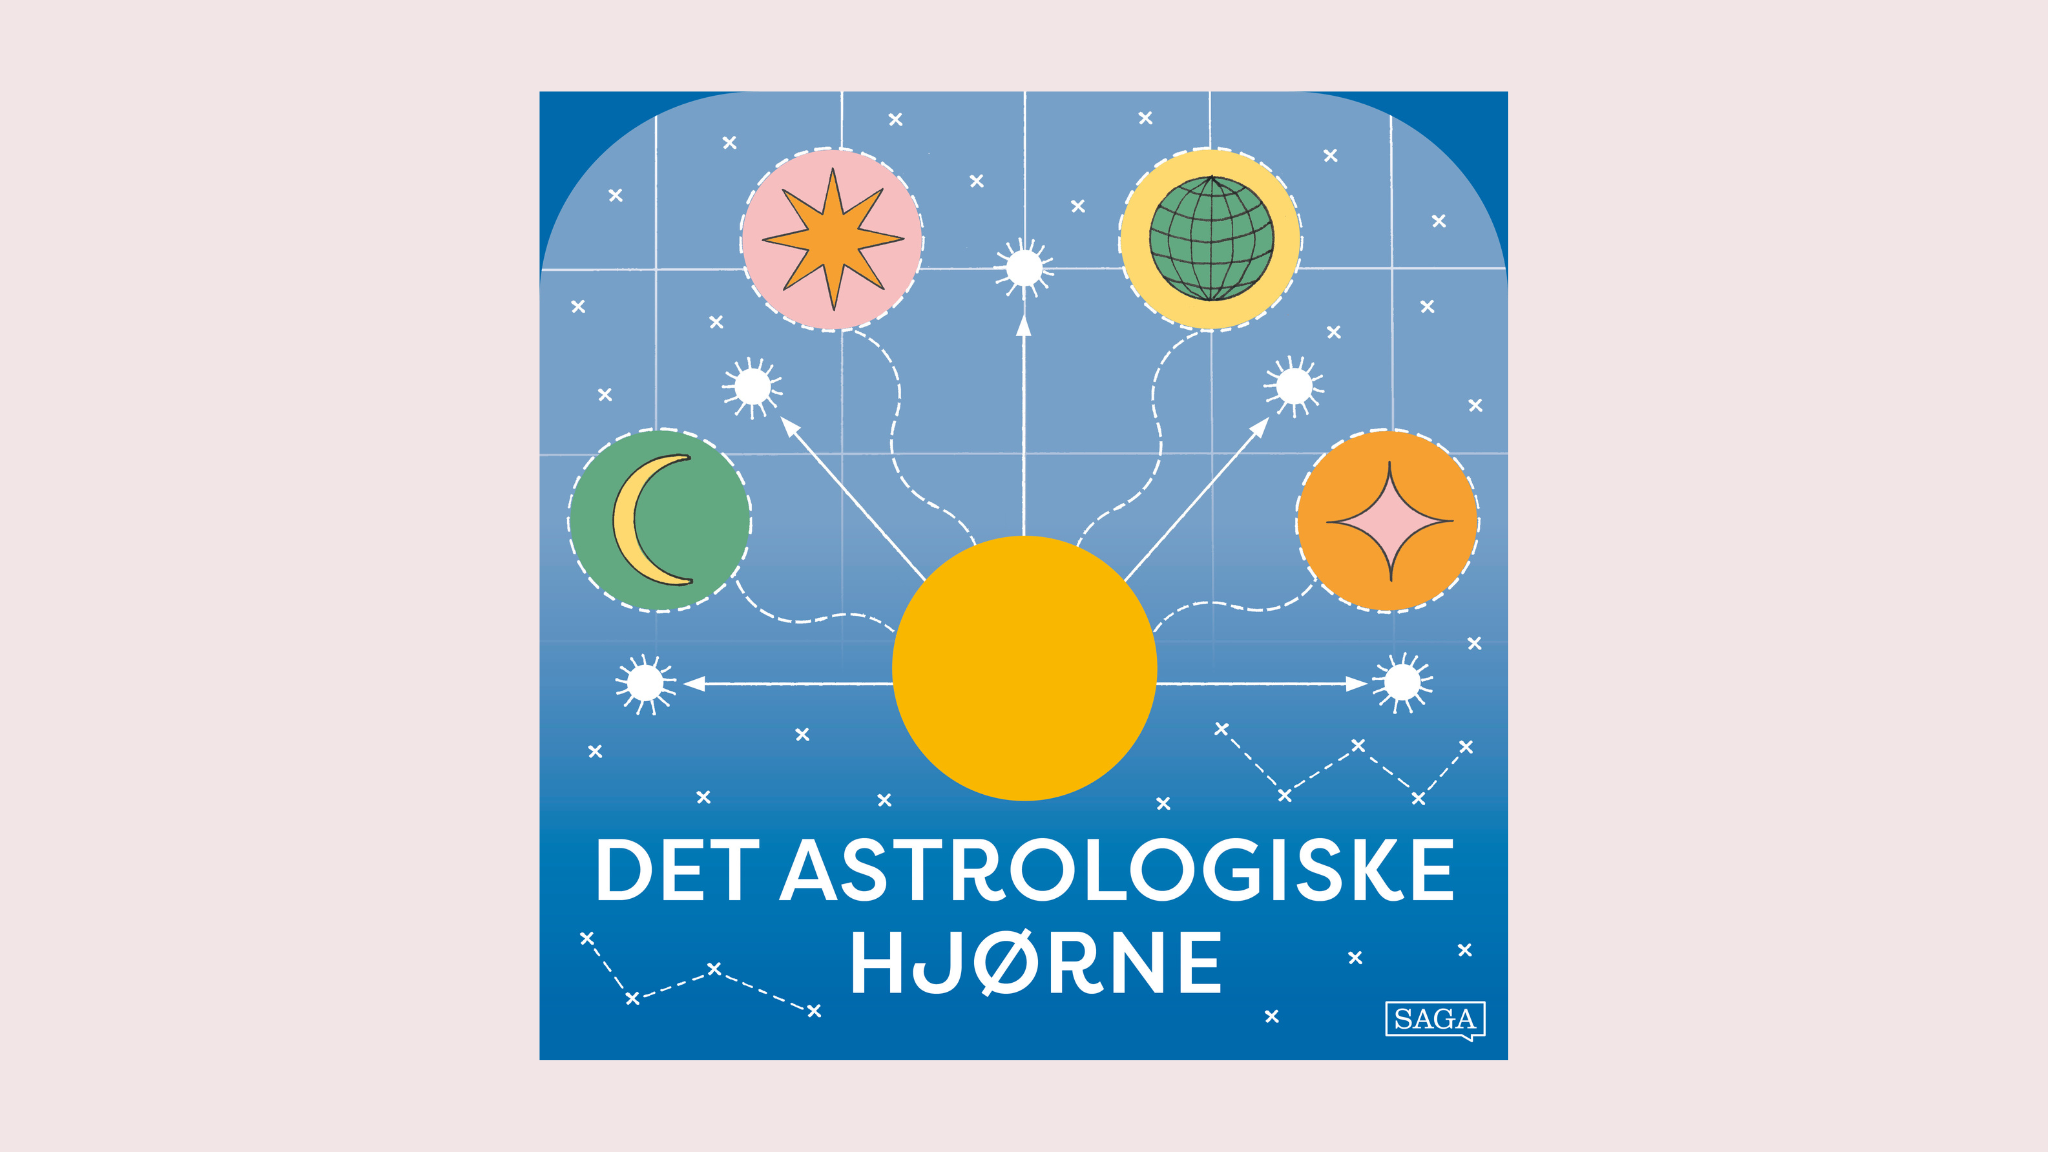 Astrologi for begyndere: Det astrologiske hjørne